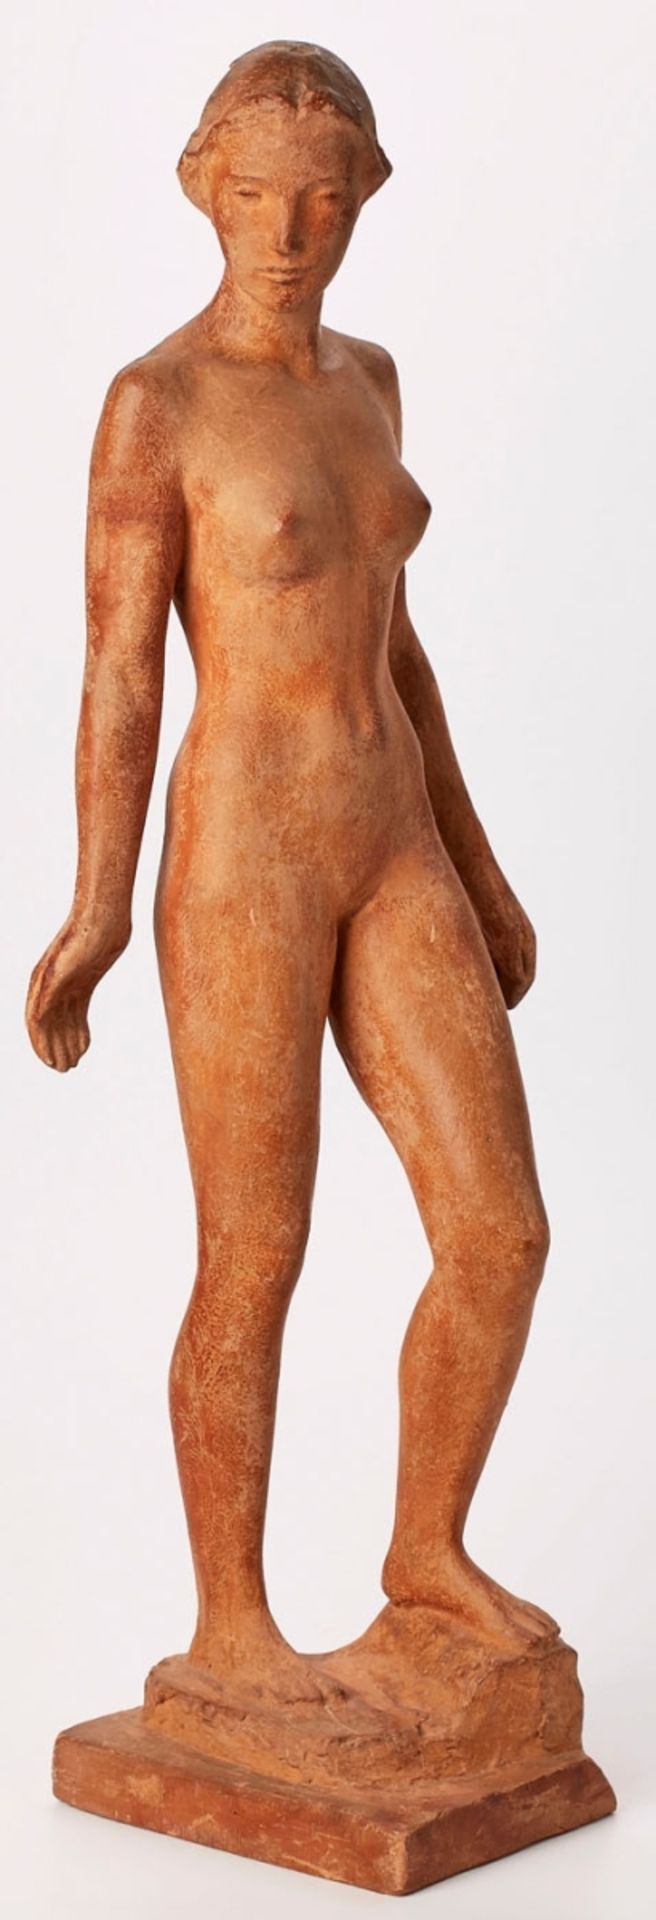 Terracotta-Skulptur Richard Martin Werner - Bild 2 aus 3